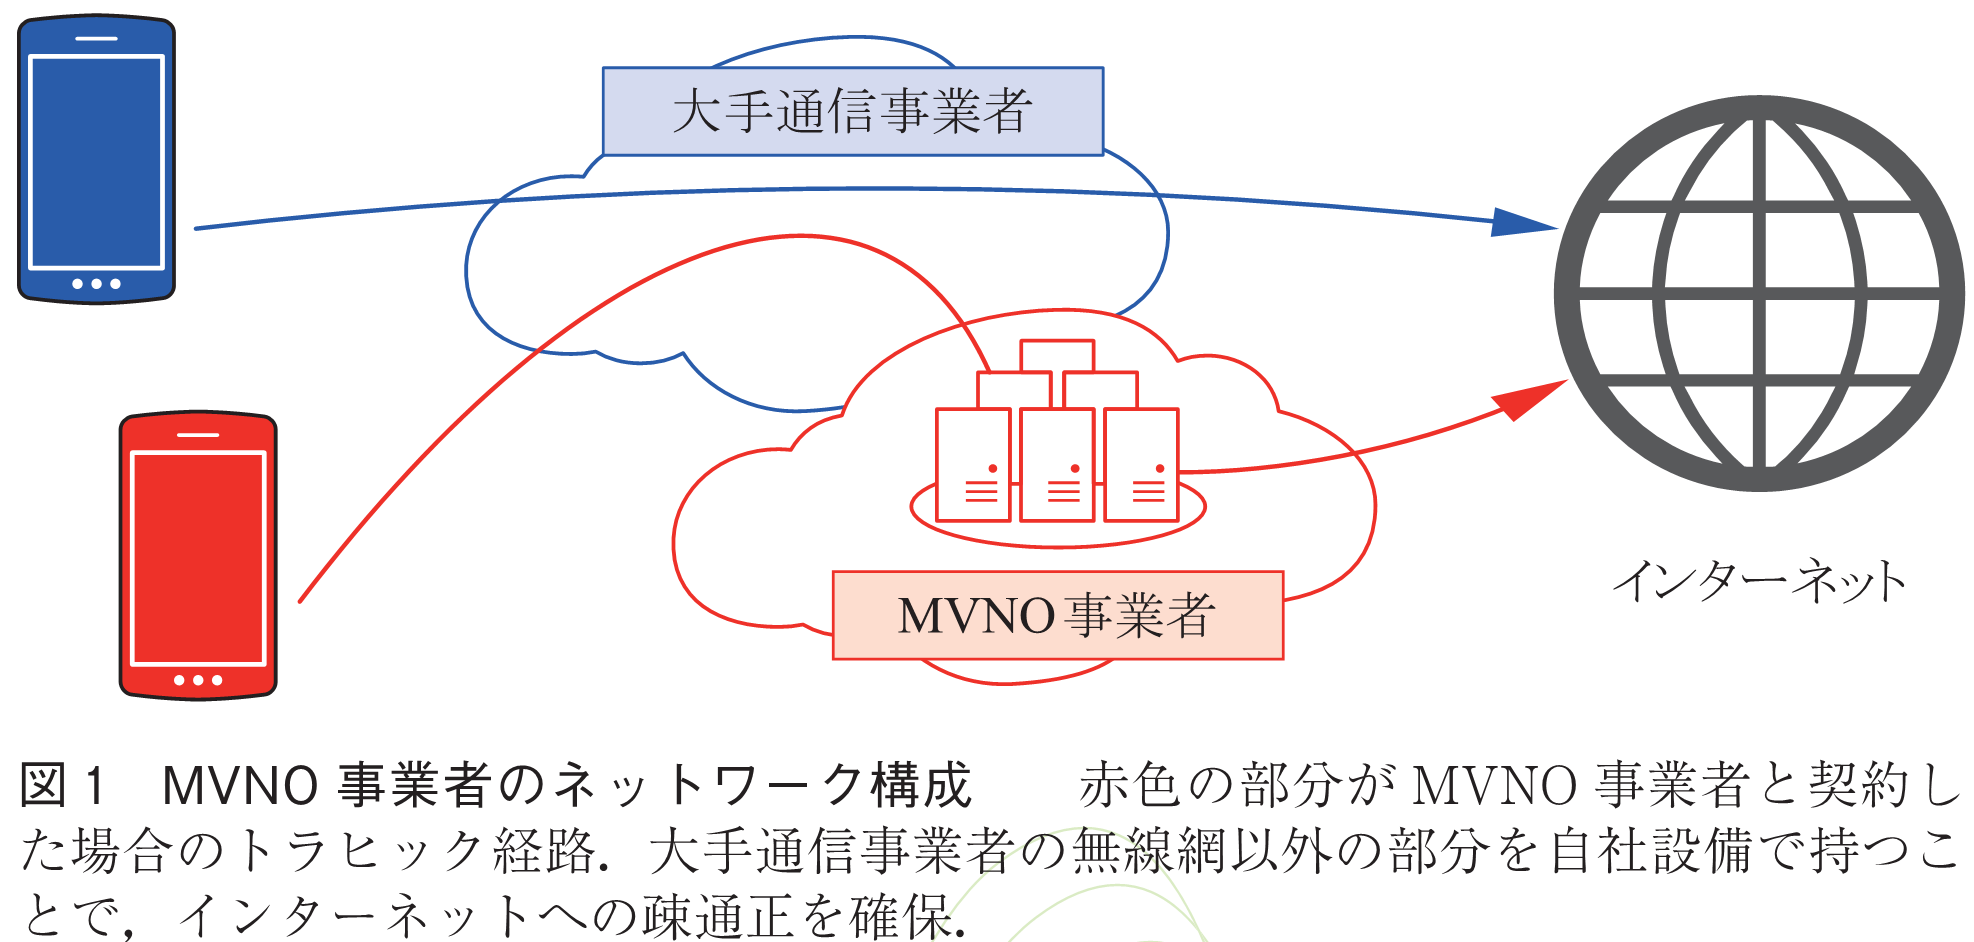 図1　MVNO事業者のネットワーク構成